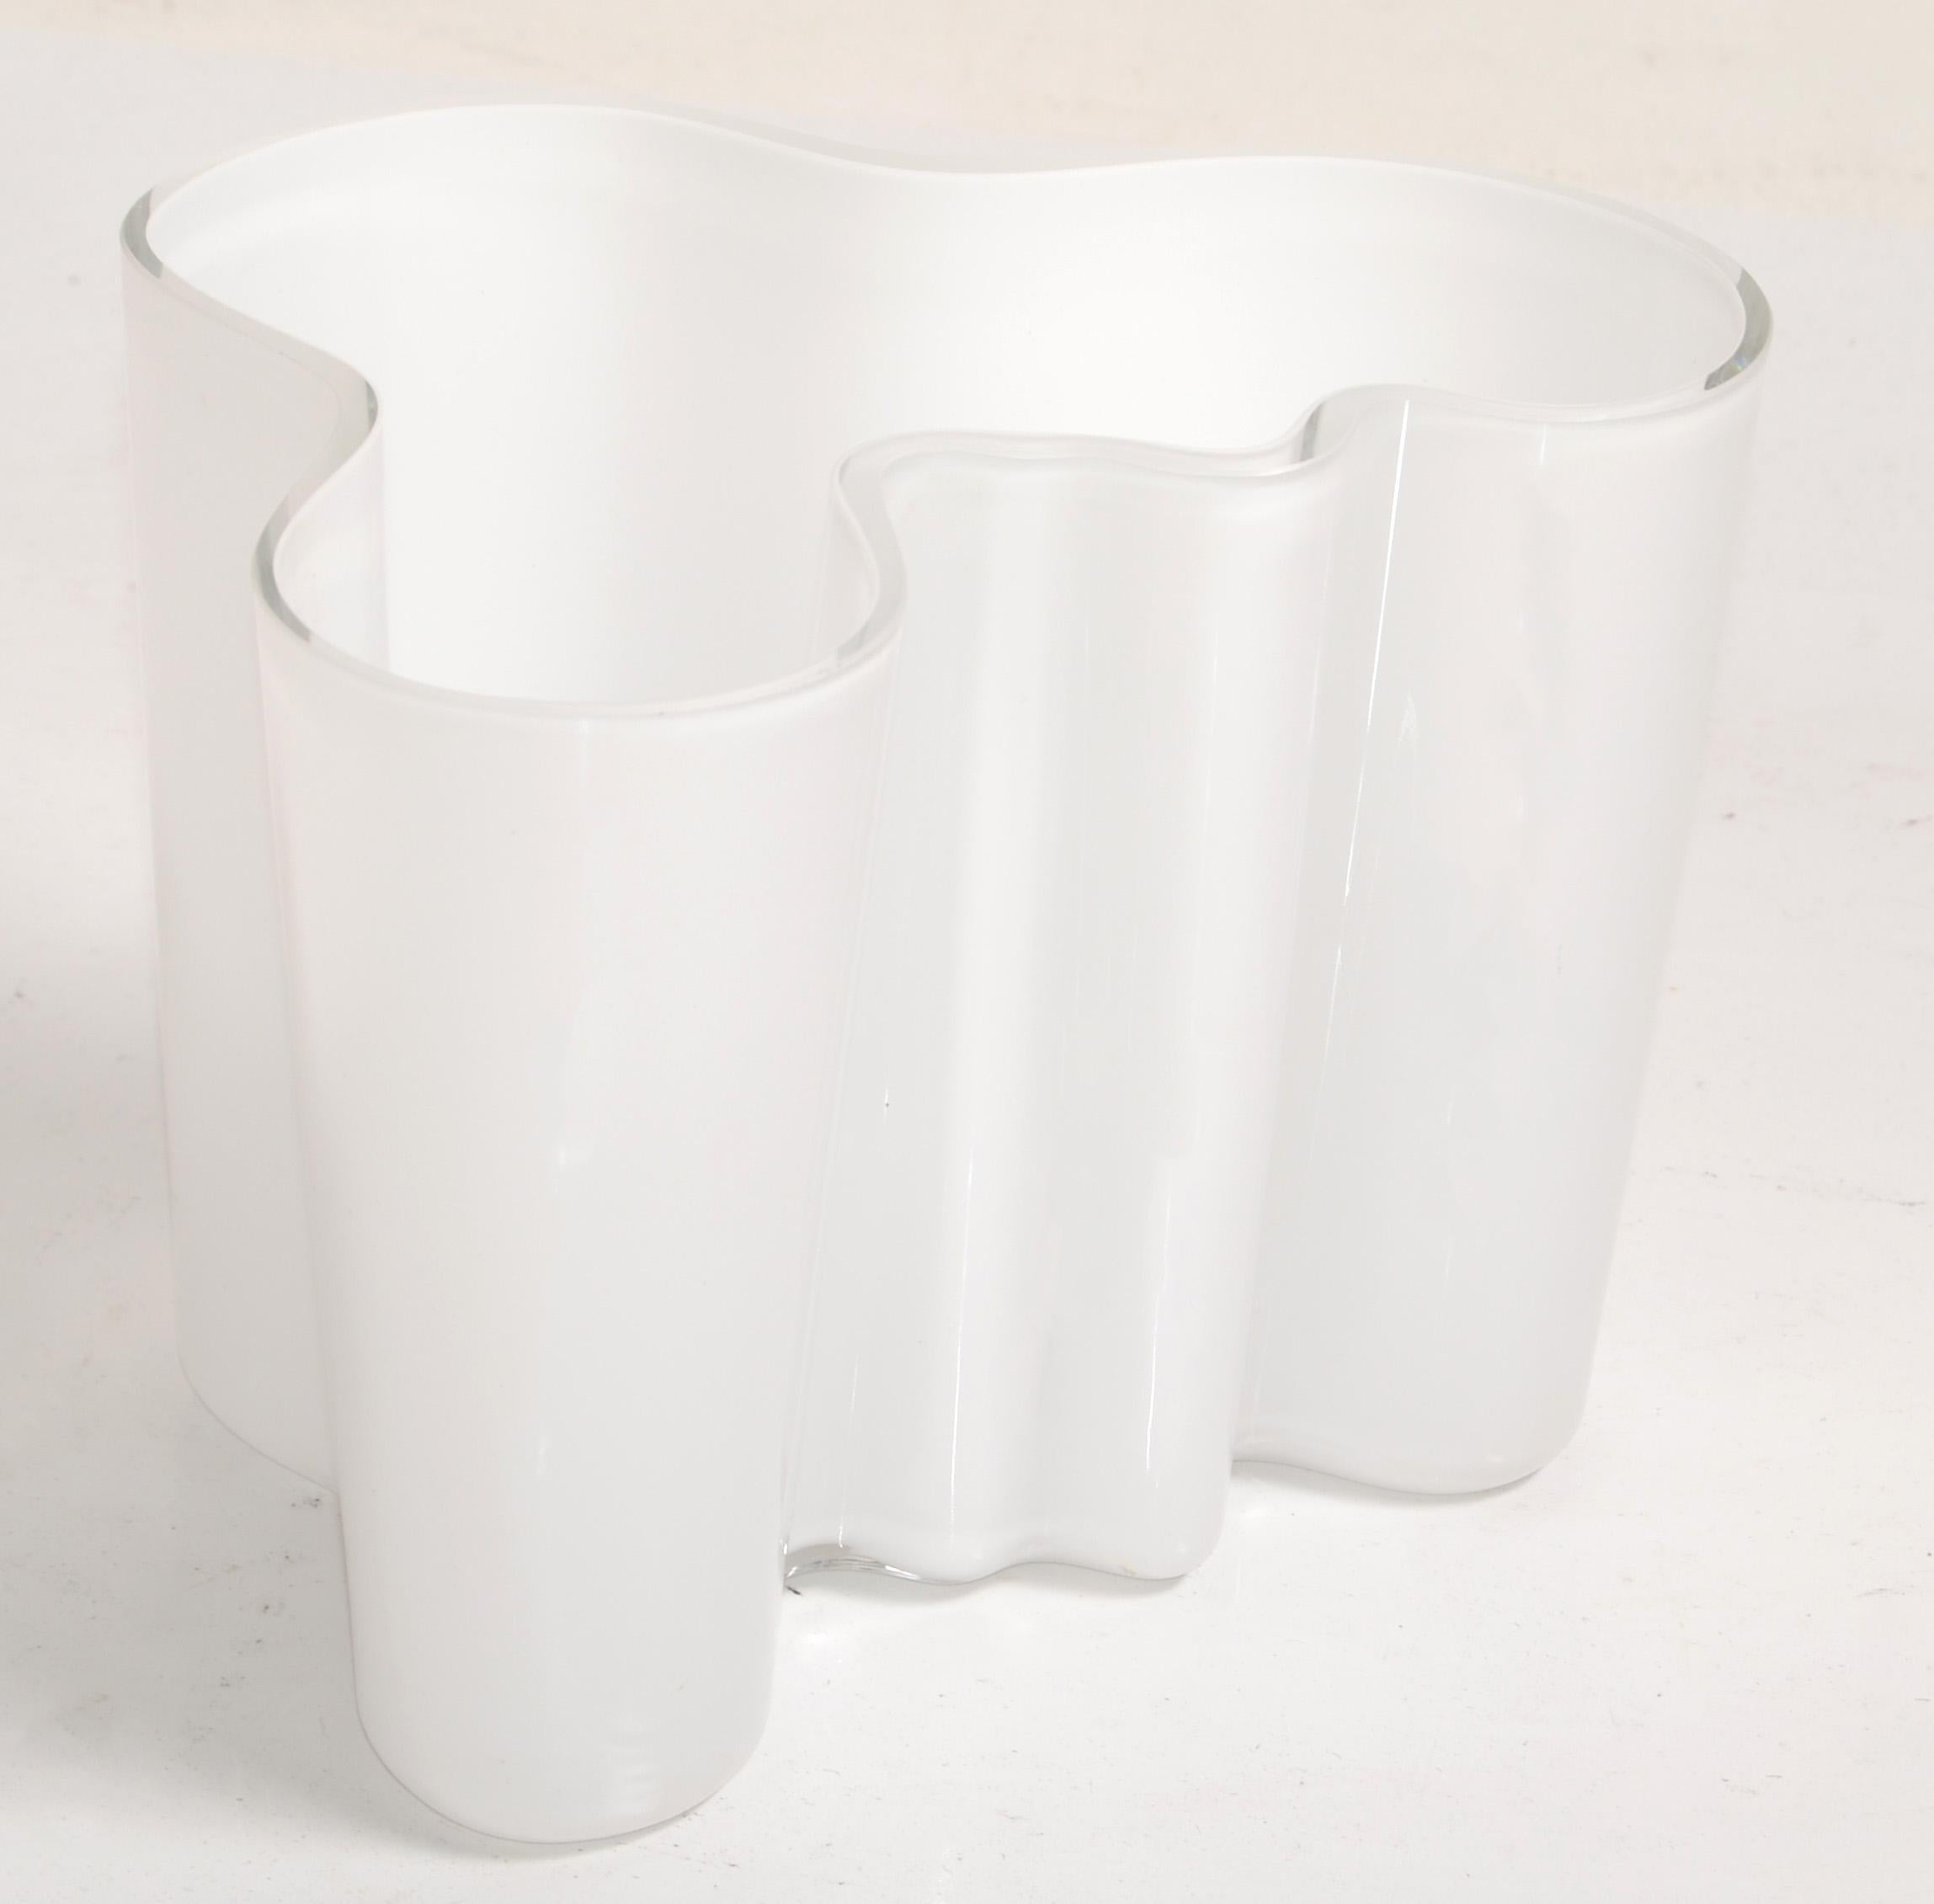 Iittala Alvar Aalto Model 3030 White Encased Glass Sculptural Flower Vase Bowl  For Sale 5